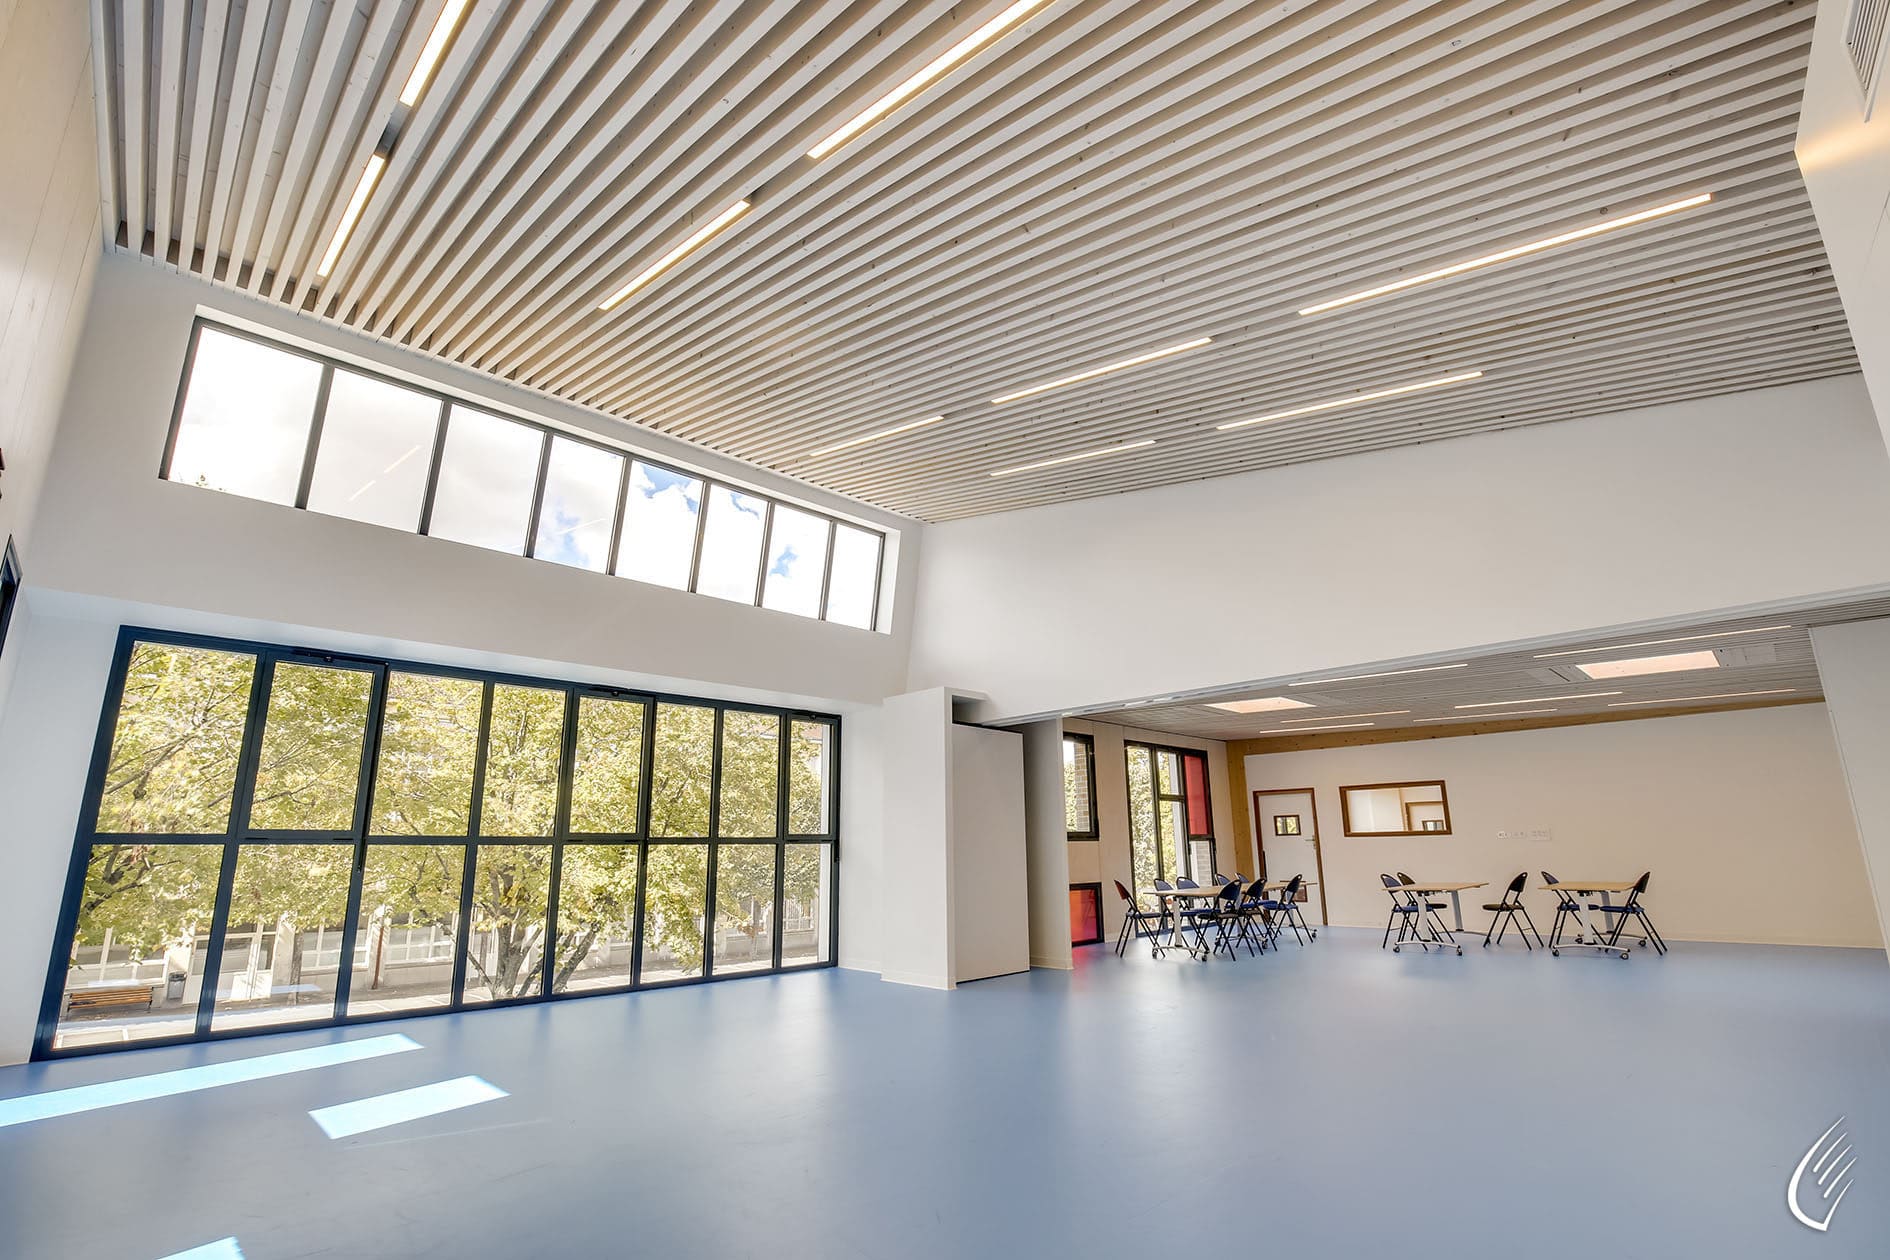 Interior & exterior lighting design for a leisure center